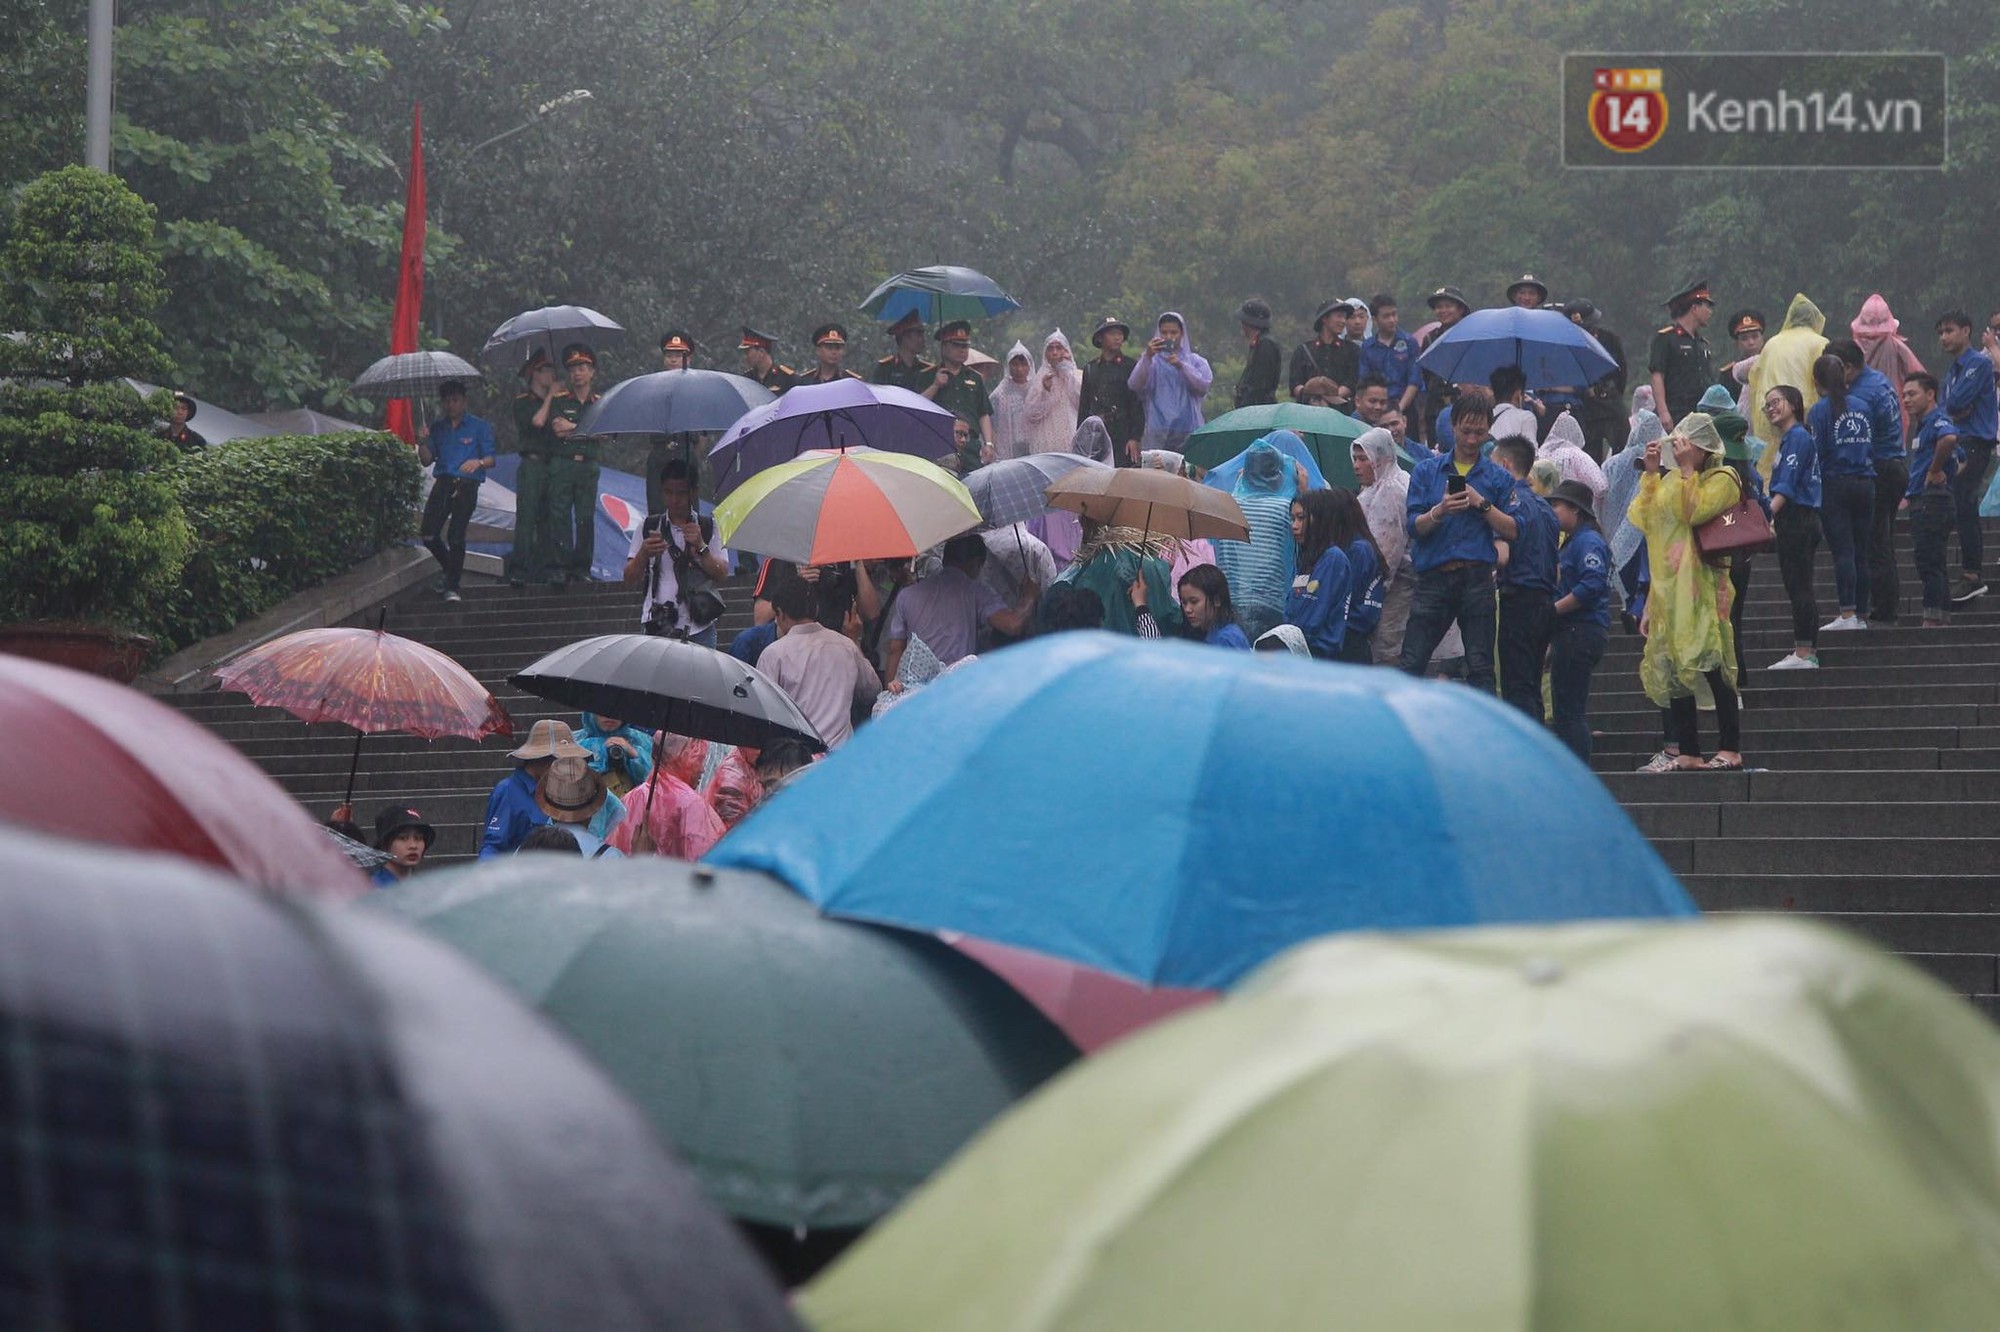 Hàng vạn người dân che ô đi khai hội Đền Hùng, hàng rào sống đứng dưới mưa đảm bảo trật tự cho lễ hội - Ảnh 2.